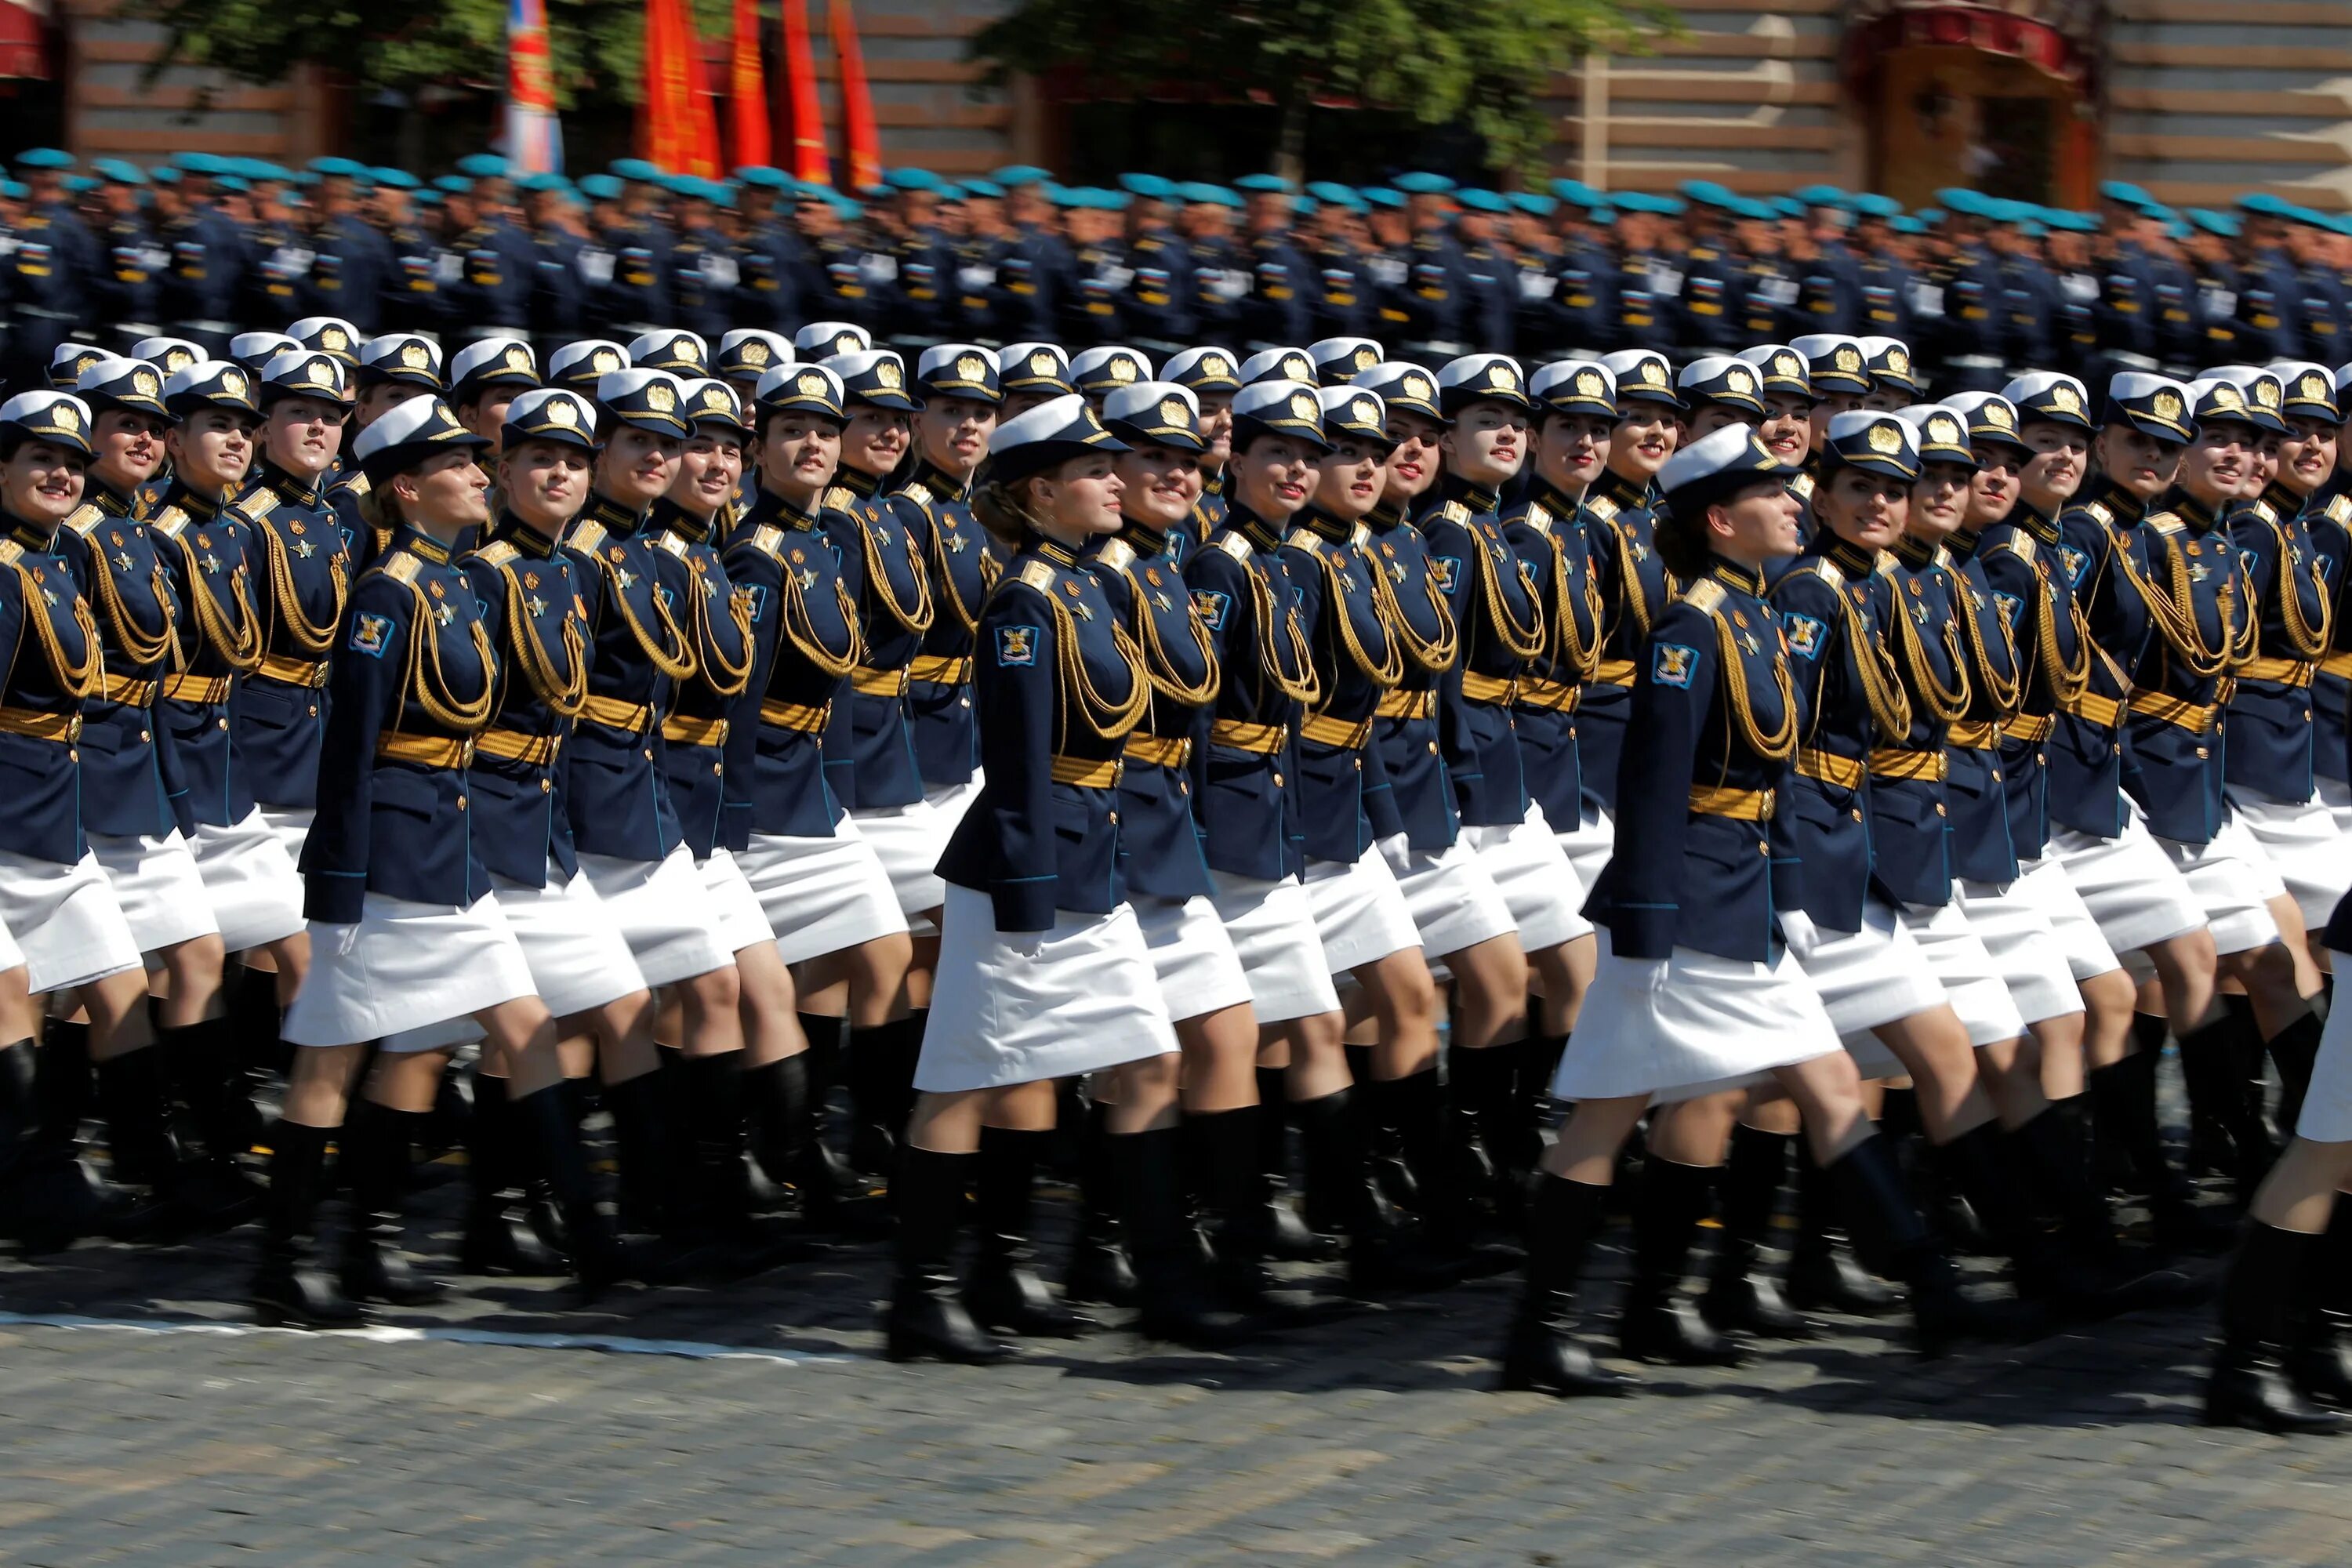 Задание на параде. Военный парад. Женщины на параде. Девушки военные на параде. Девушки на параде Победы.